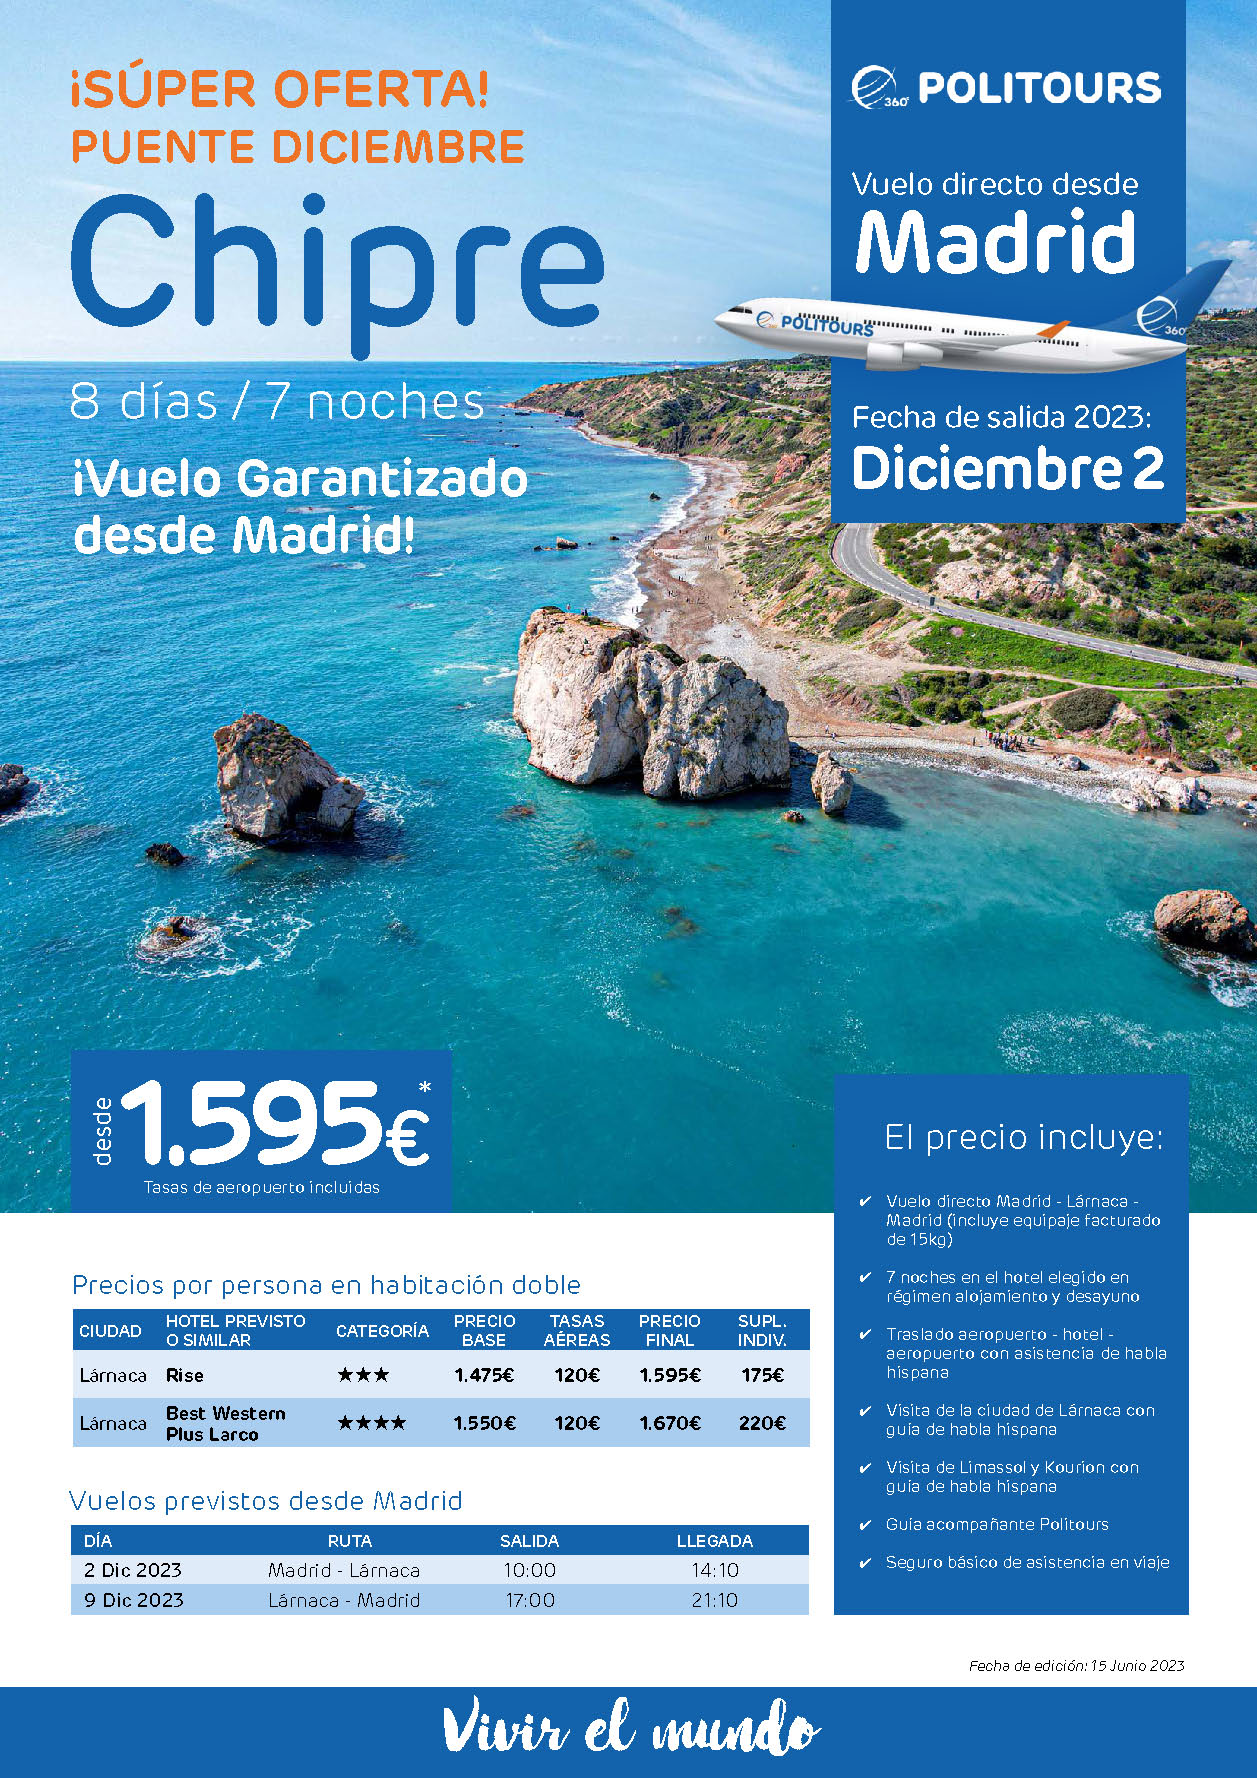 Oferta Politours Puente de Diciembre 2023 Circuito Chipre 8 dias salida 2 diciembre en vuelo directo desde Madrid